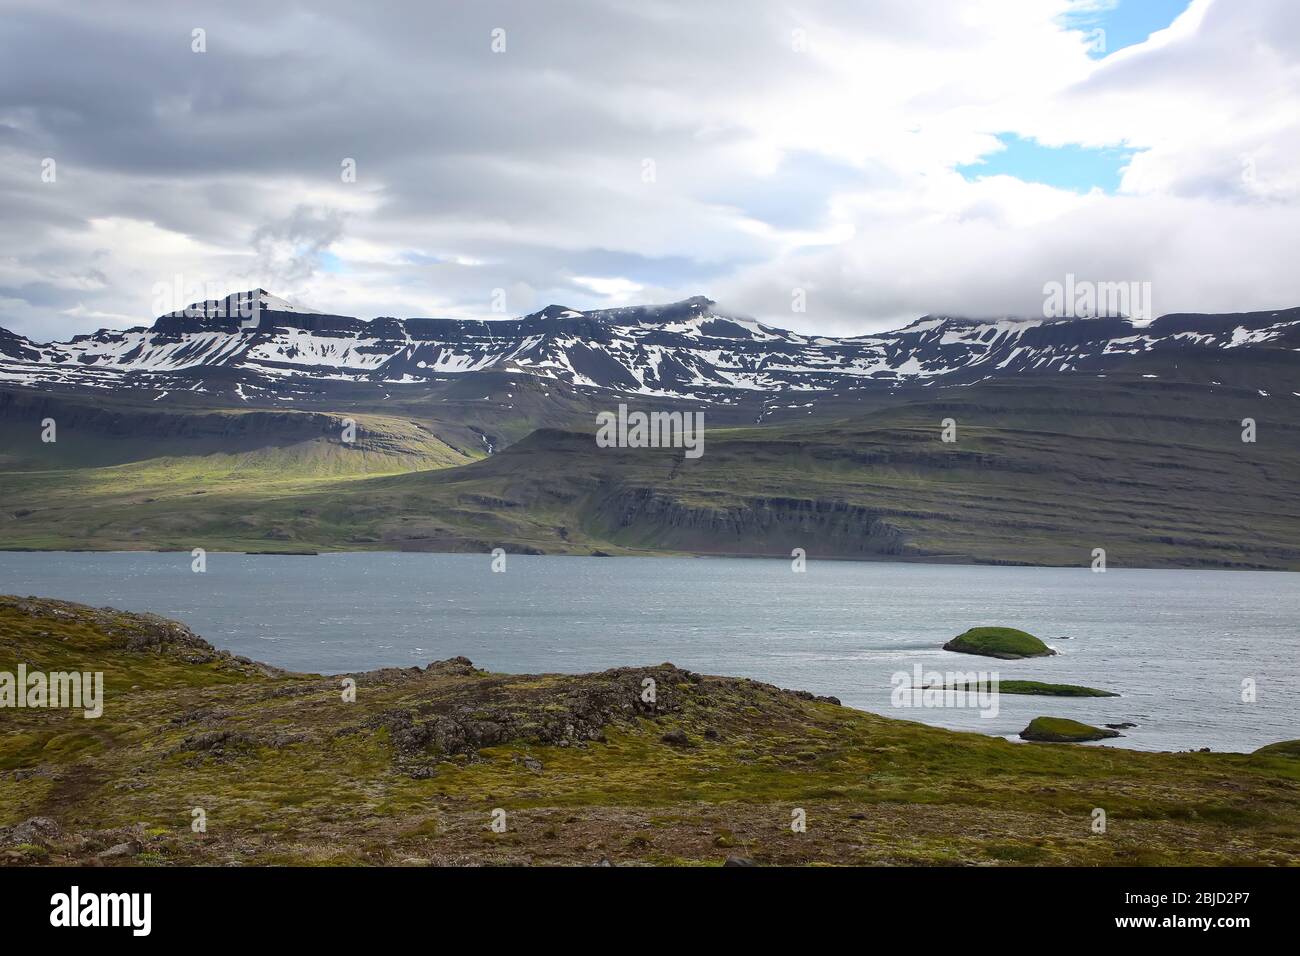 La péninsule de Holmanes et la réserve naturelle abritent une nature et un paysage variés et magnifiques. Eskifjordur, Islande de l'est. Banque D'Images